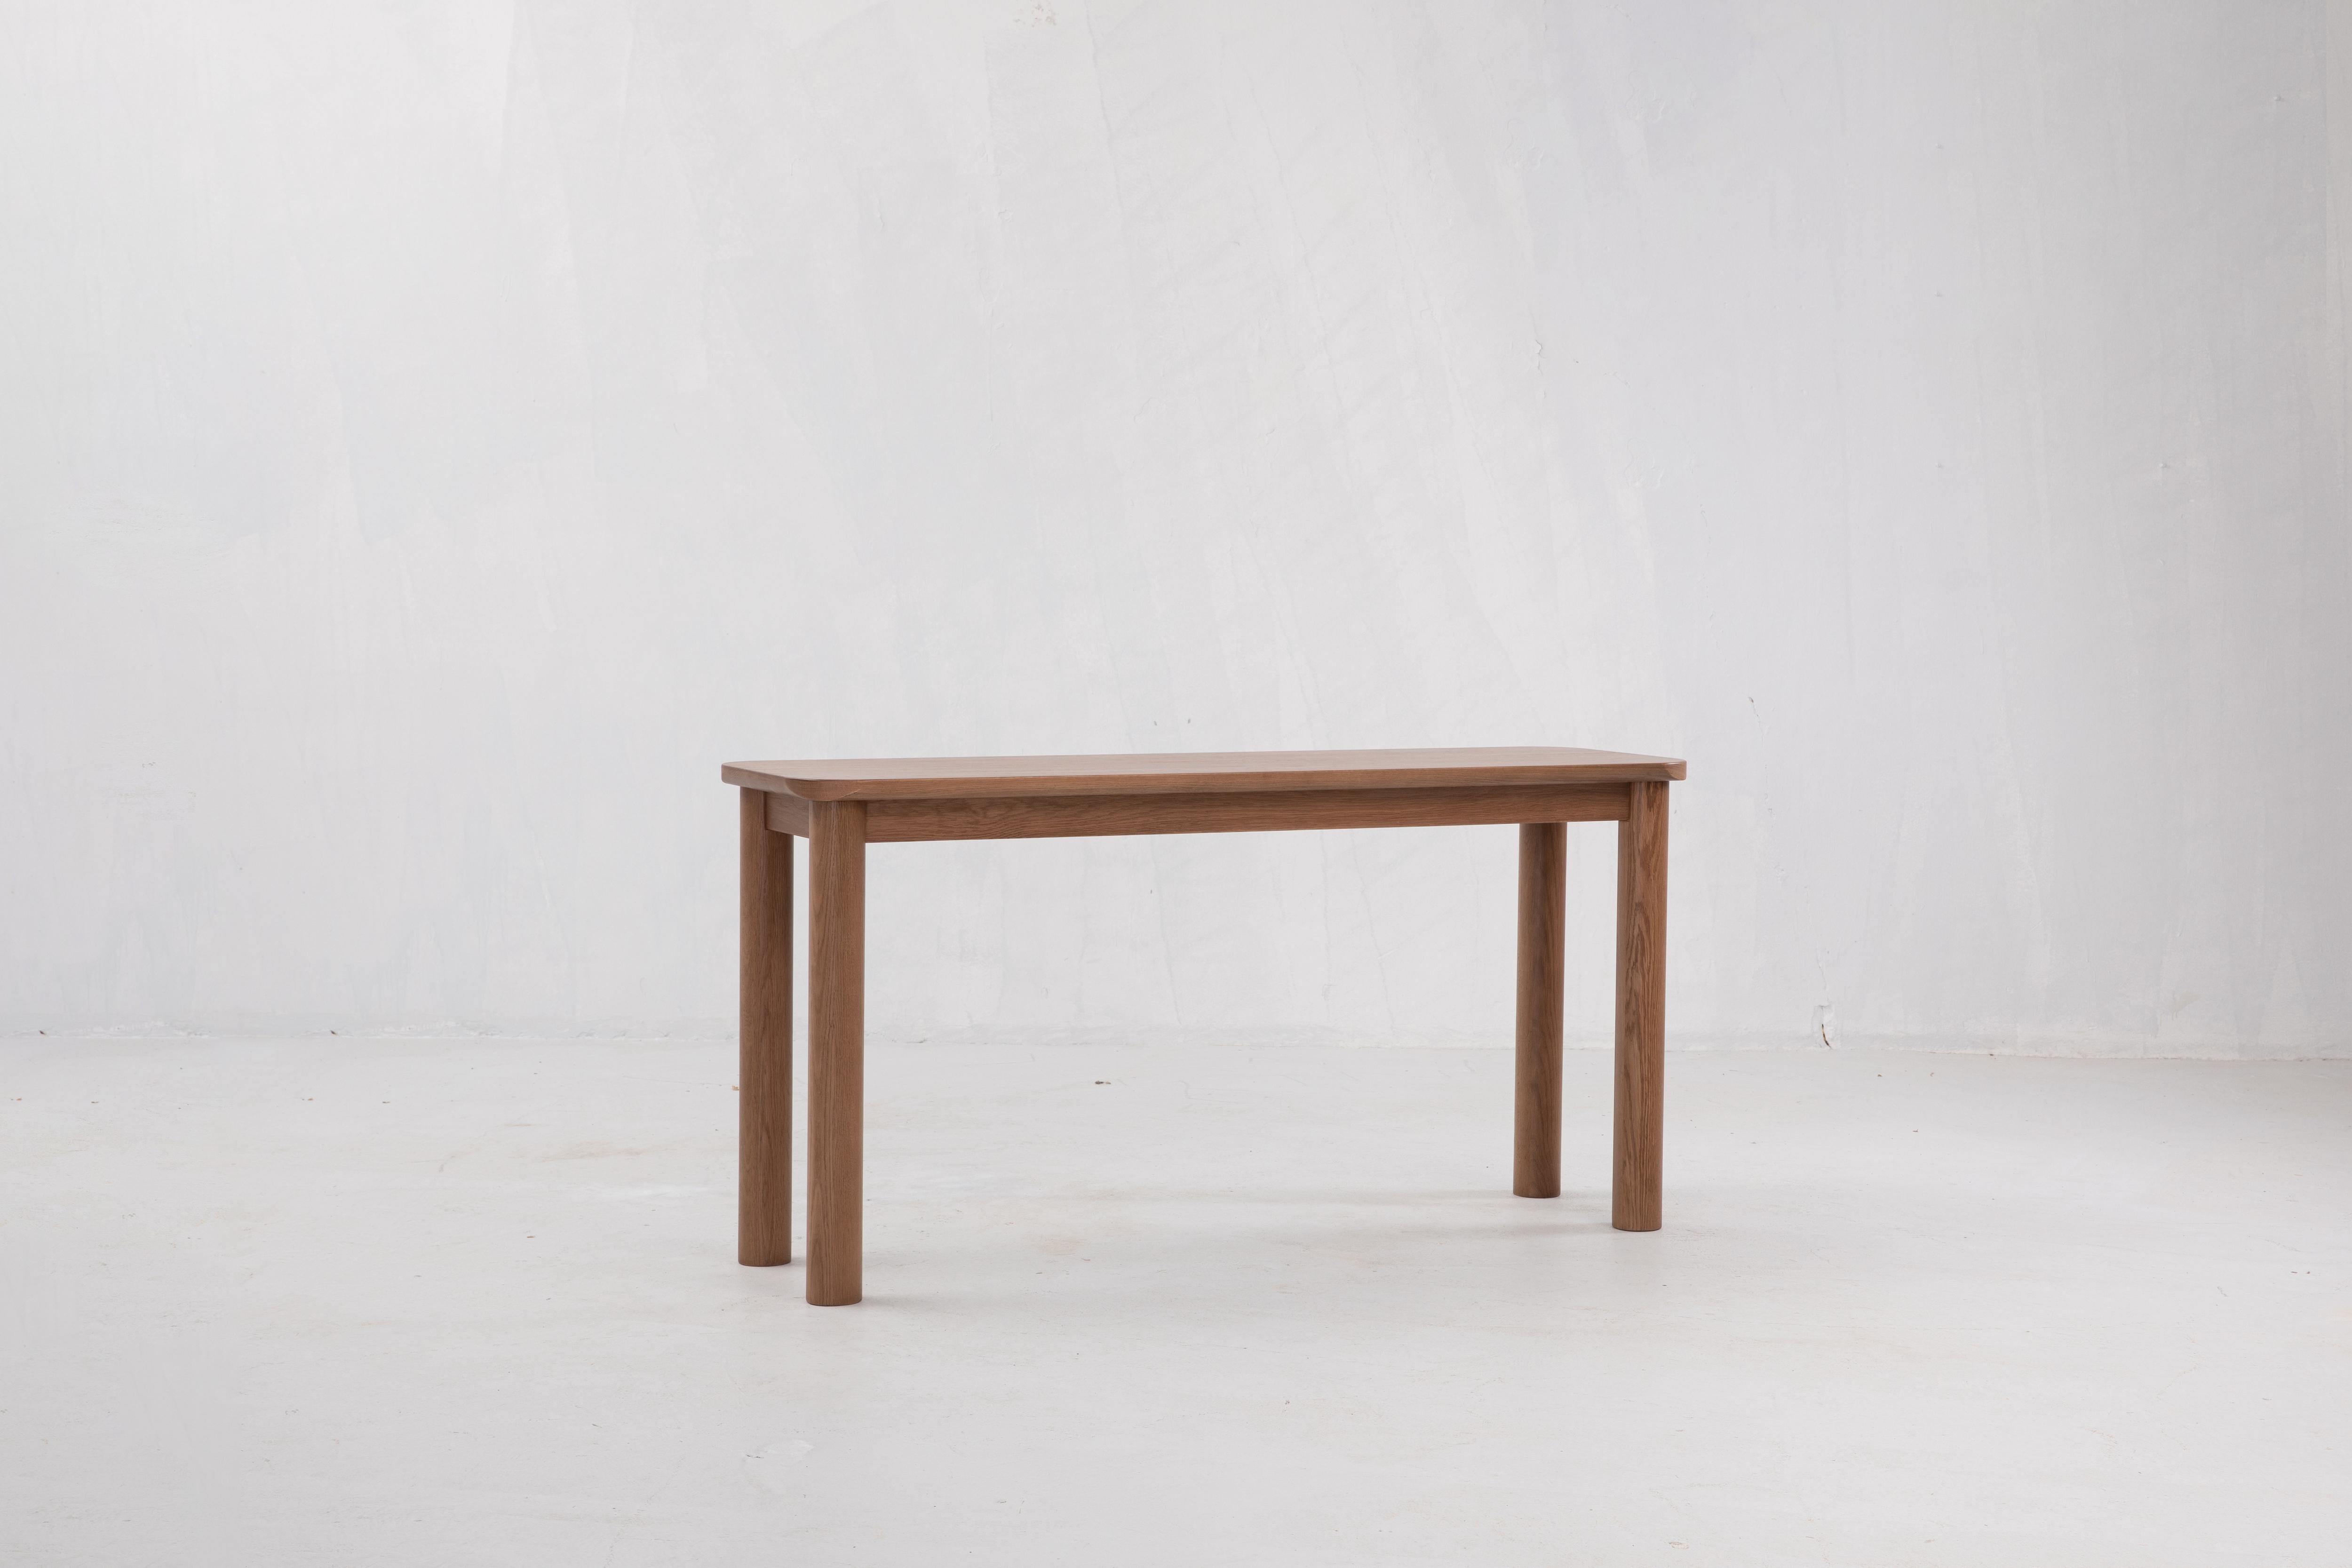 Sun at Six ist ein Studio für zeitgenössisches Möbeldesign, das mit traditionellen chinesischen Tischlermeistern zusammenarbeitet, um unsere Stücke in Handarbeit zu fertigen. 

Großartige Möbel beginnen mit hochwertigen Materialien: rohe, nachhaltig